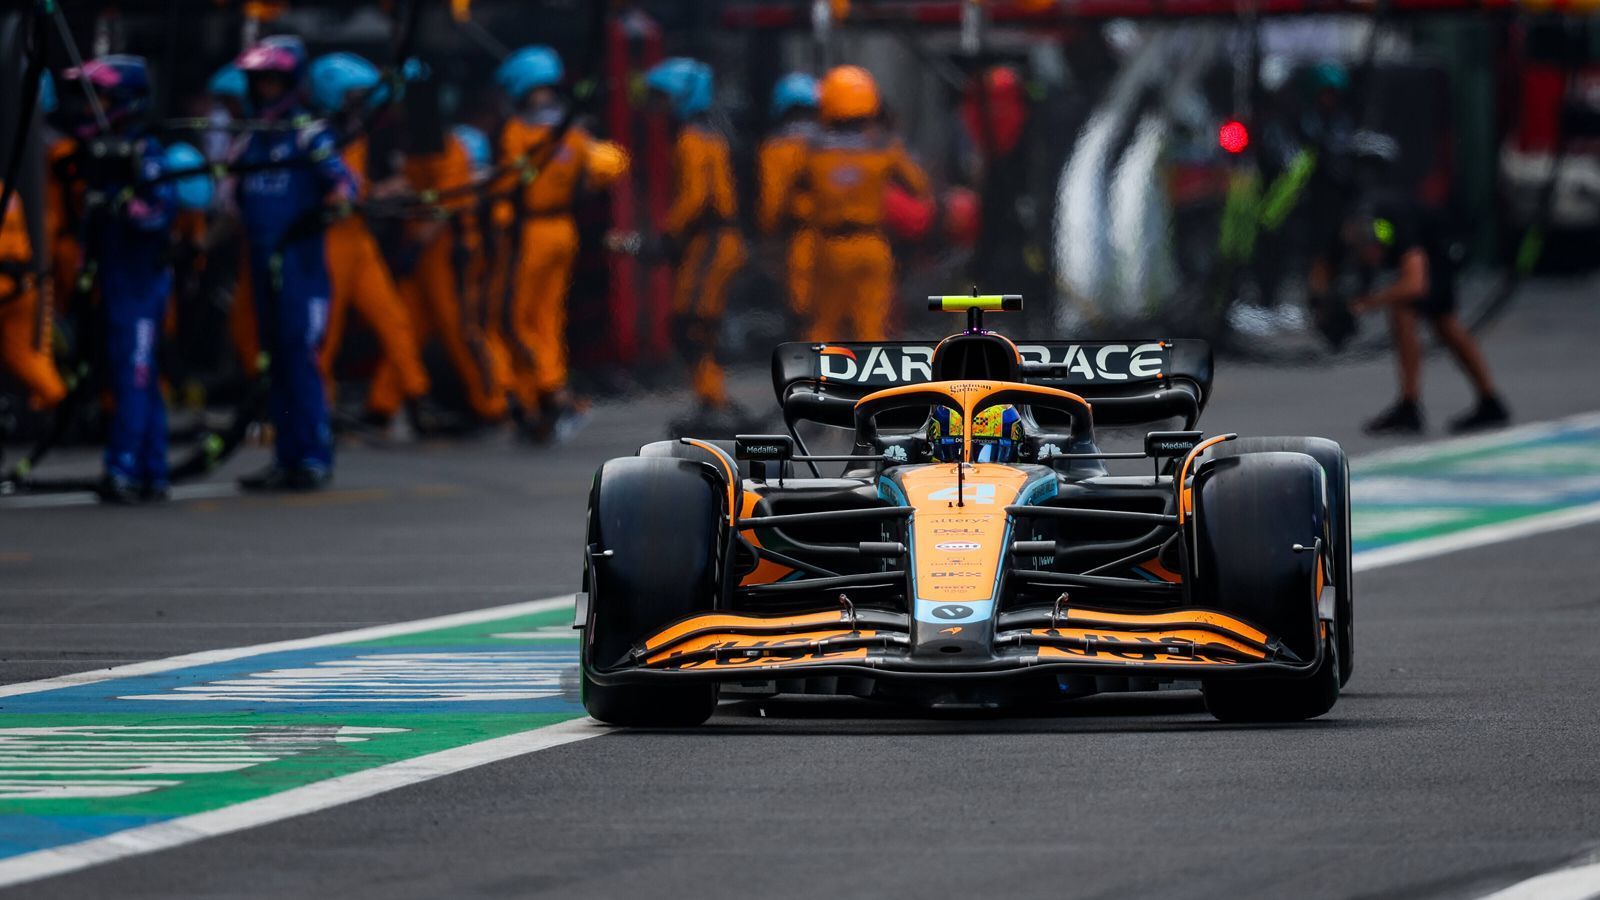 
                <strong>Gewinner: McLaren</strong><br>
                McLaren profitierte vor allem vom Versagen anderer. Durch den Ausfall von Fernando Alonso rückte Lando Norris noch in die Punkteränge. Außerdem konnte Esteban Ocon nicht innerhalb von zehn Sekunden hinter Daniel Ricciardo bleiben, wodurch er aufgrund dessen Zeitstrafe letztlich vor dem Australier gelandet wäre. Ein großer Schritt für das britische Team im Kampf um Platz vier der Konstrukteurswertung, das damit Anschluss an Alpine hält und nur noch sieben Punkte Rückstand hat.
              